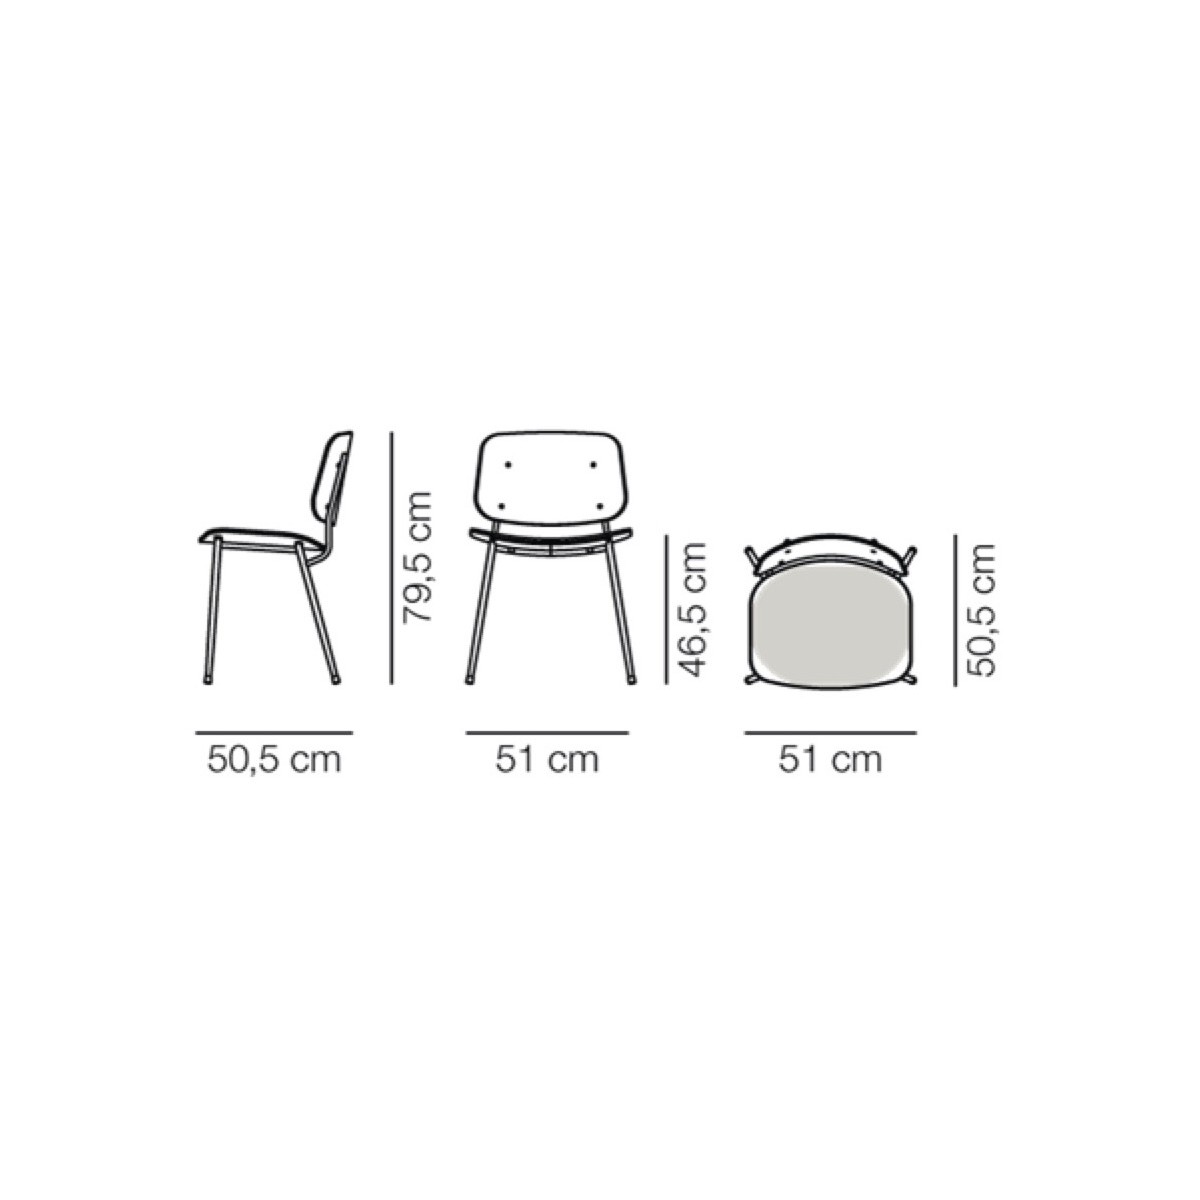 seat upholstered – Søborg chair 3061 (steel)